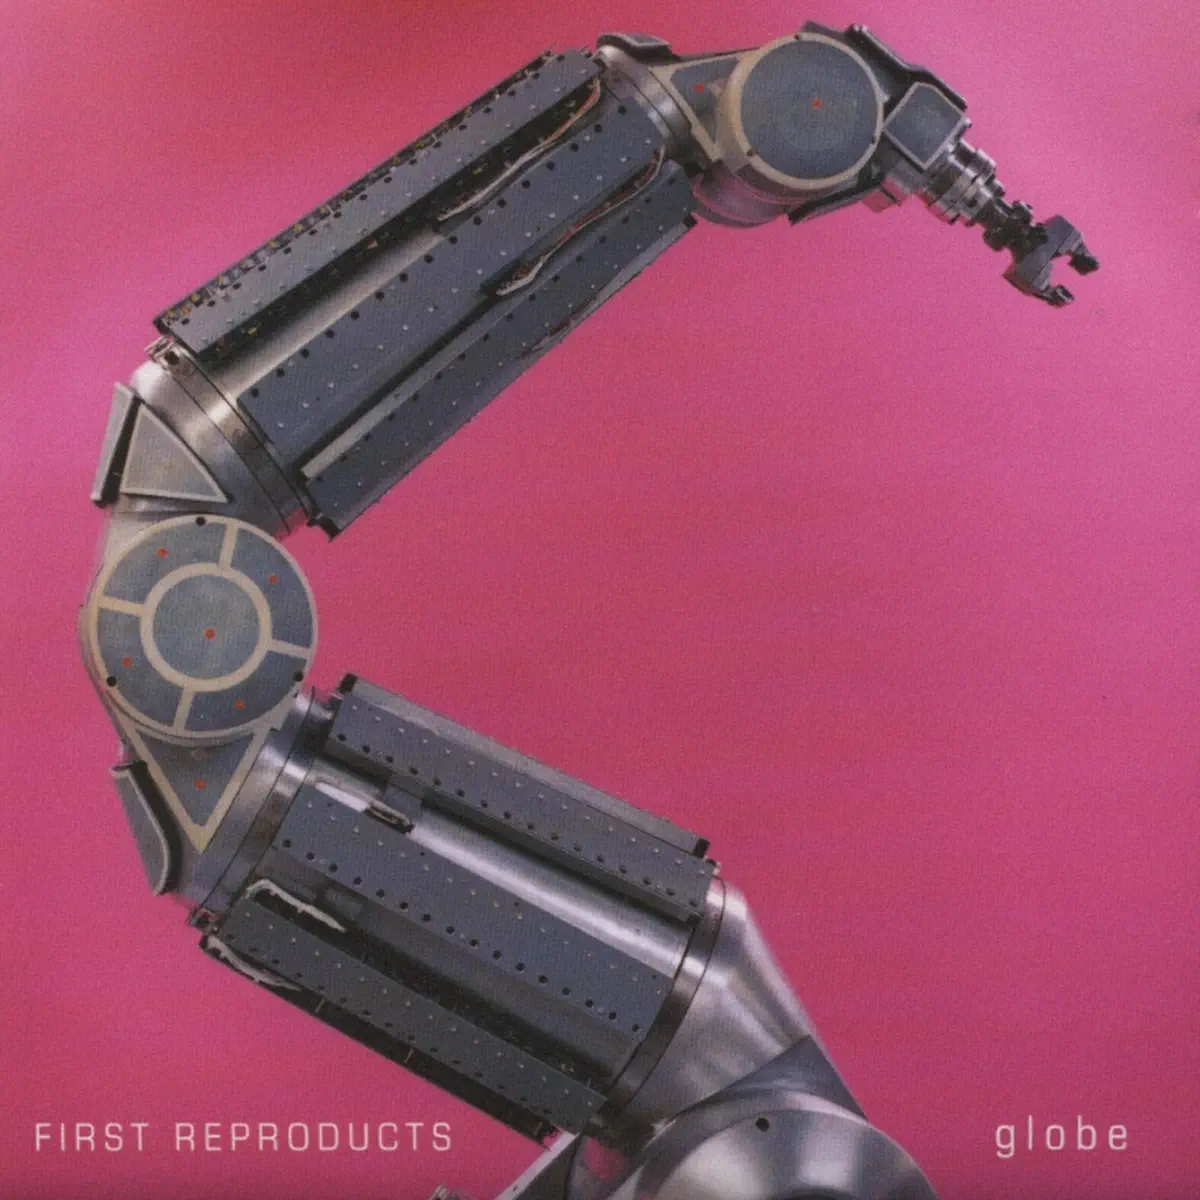 地球乐团 globe - FIRST REPRODUCTS (1999) [iTunes Plus AAC M4A]-新房子